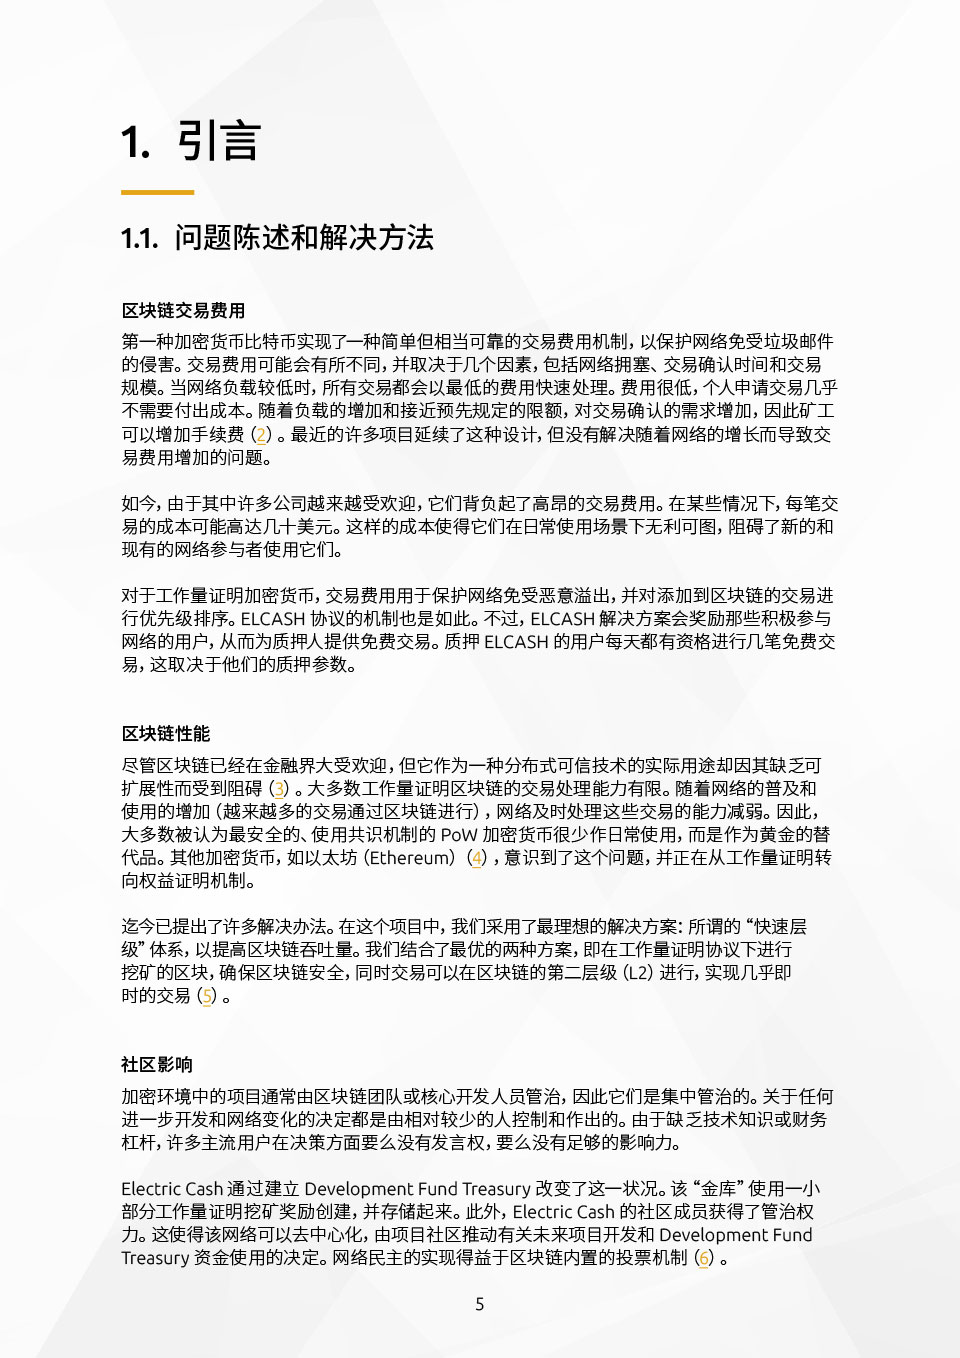 Strona dokumentu po chińsku